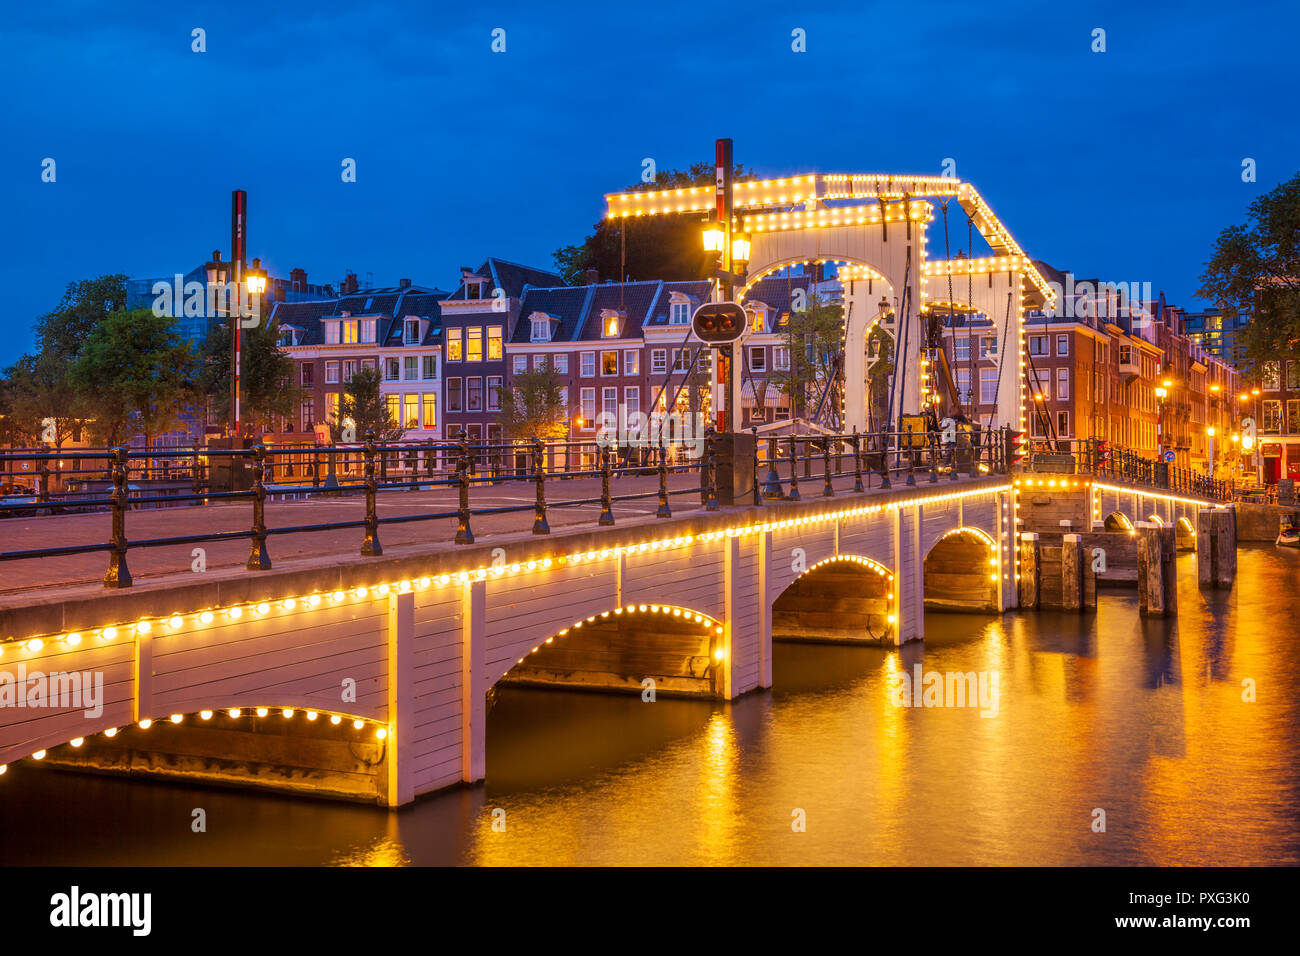 Amsterdam Magere brug Amsterdam Skinny Bridge Amsterdam la nuit un double pont-levis enjambant la rivière Amstel Amsterdam pays-Bas Hollande Europe Banque D'Images